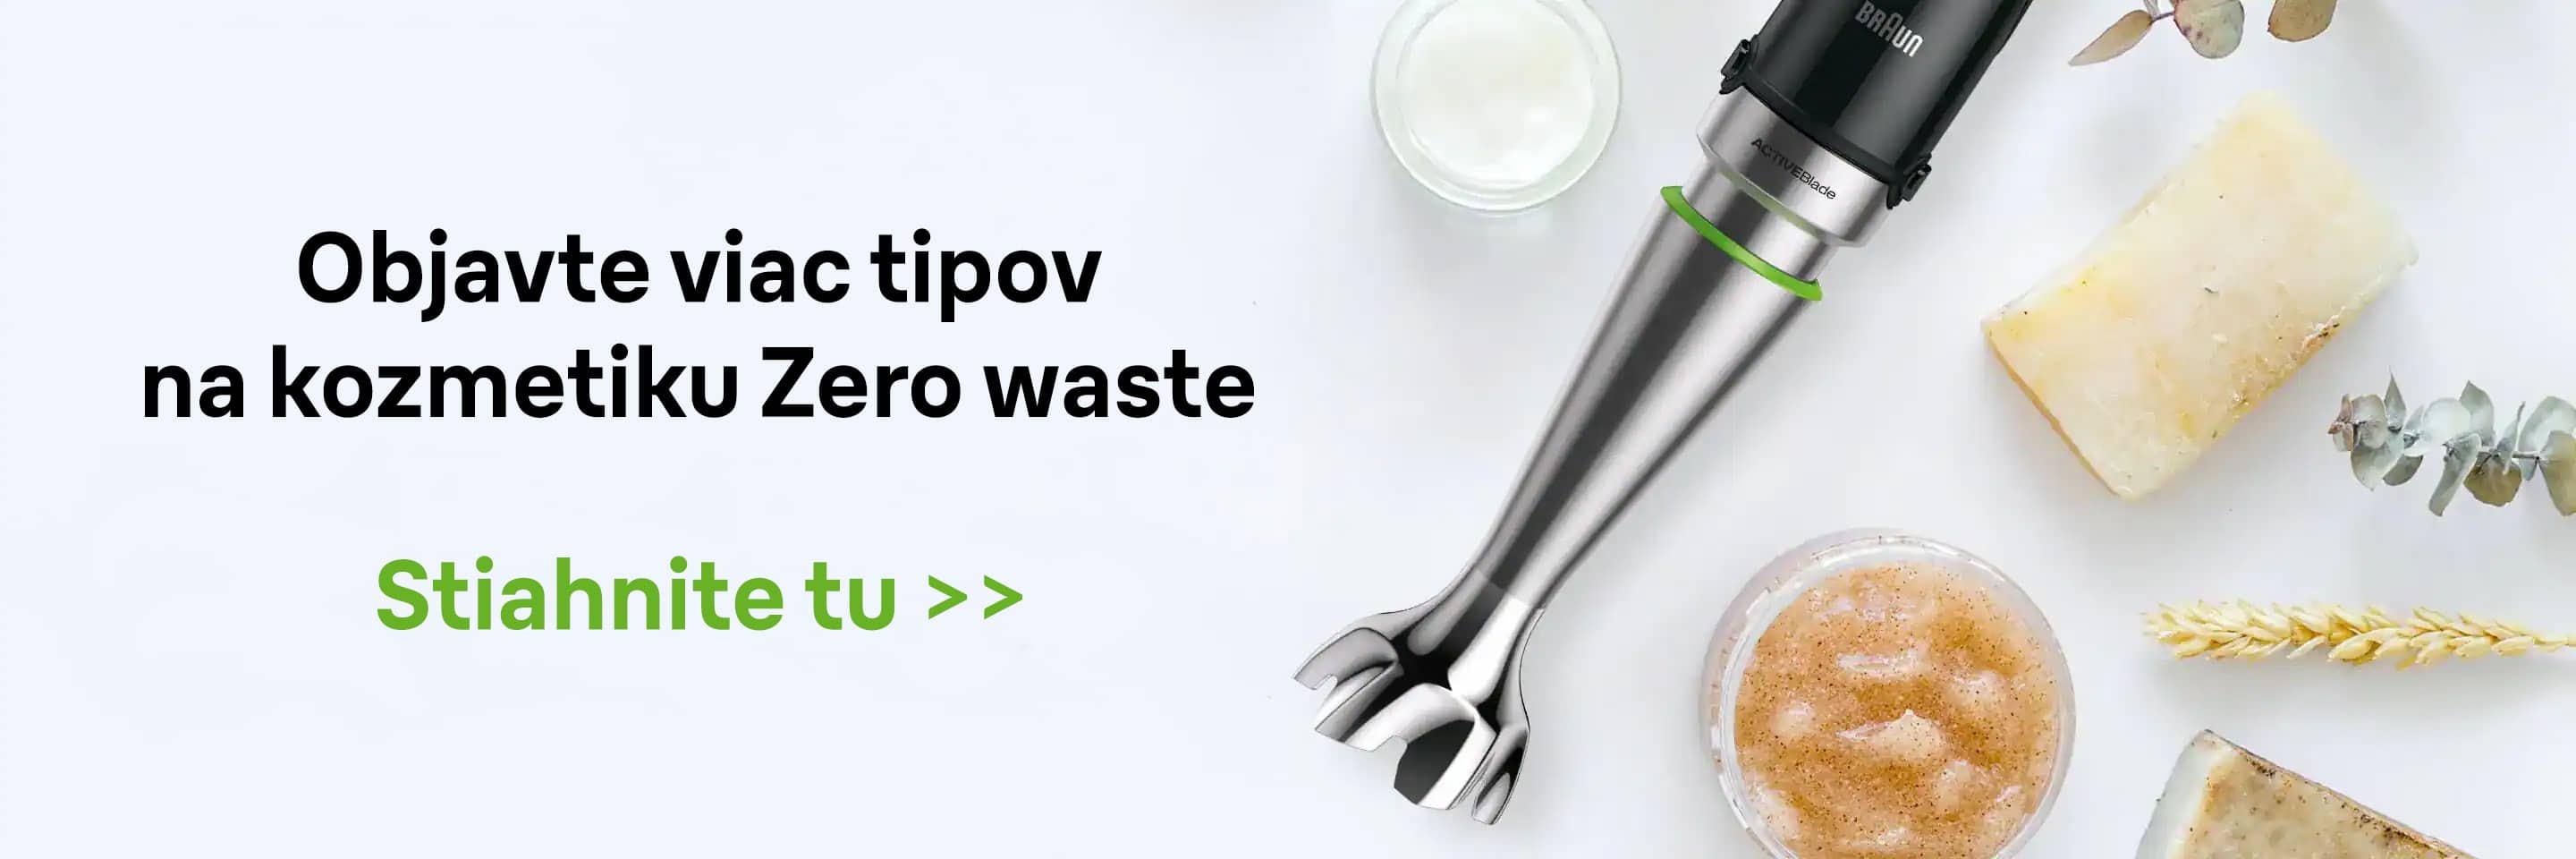 Objavte viac tipov na kozmetiku Zero waste